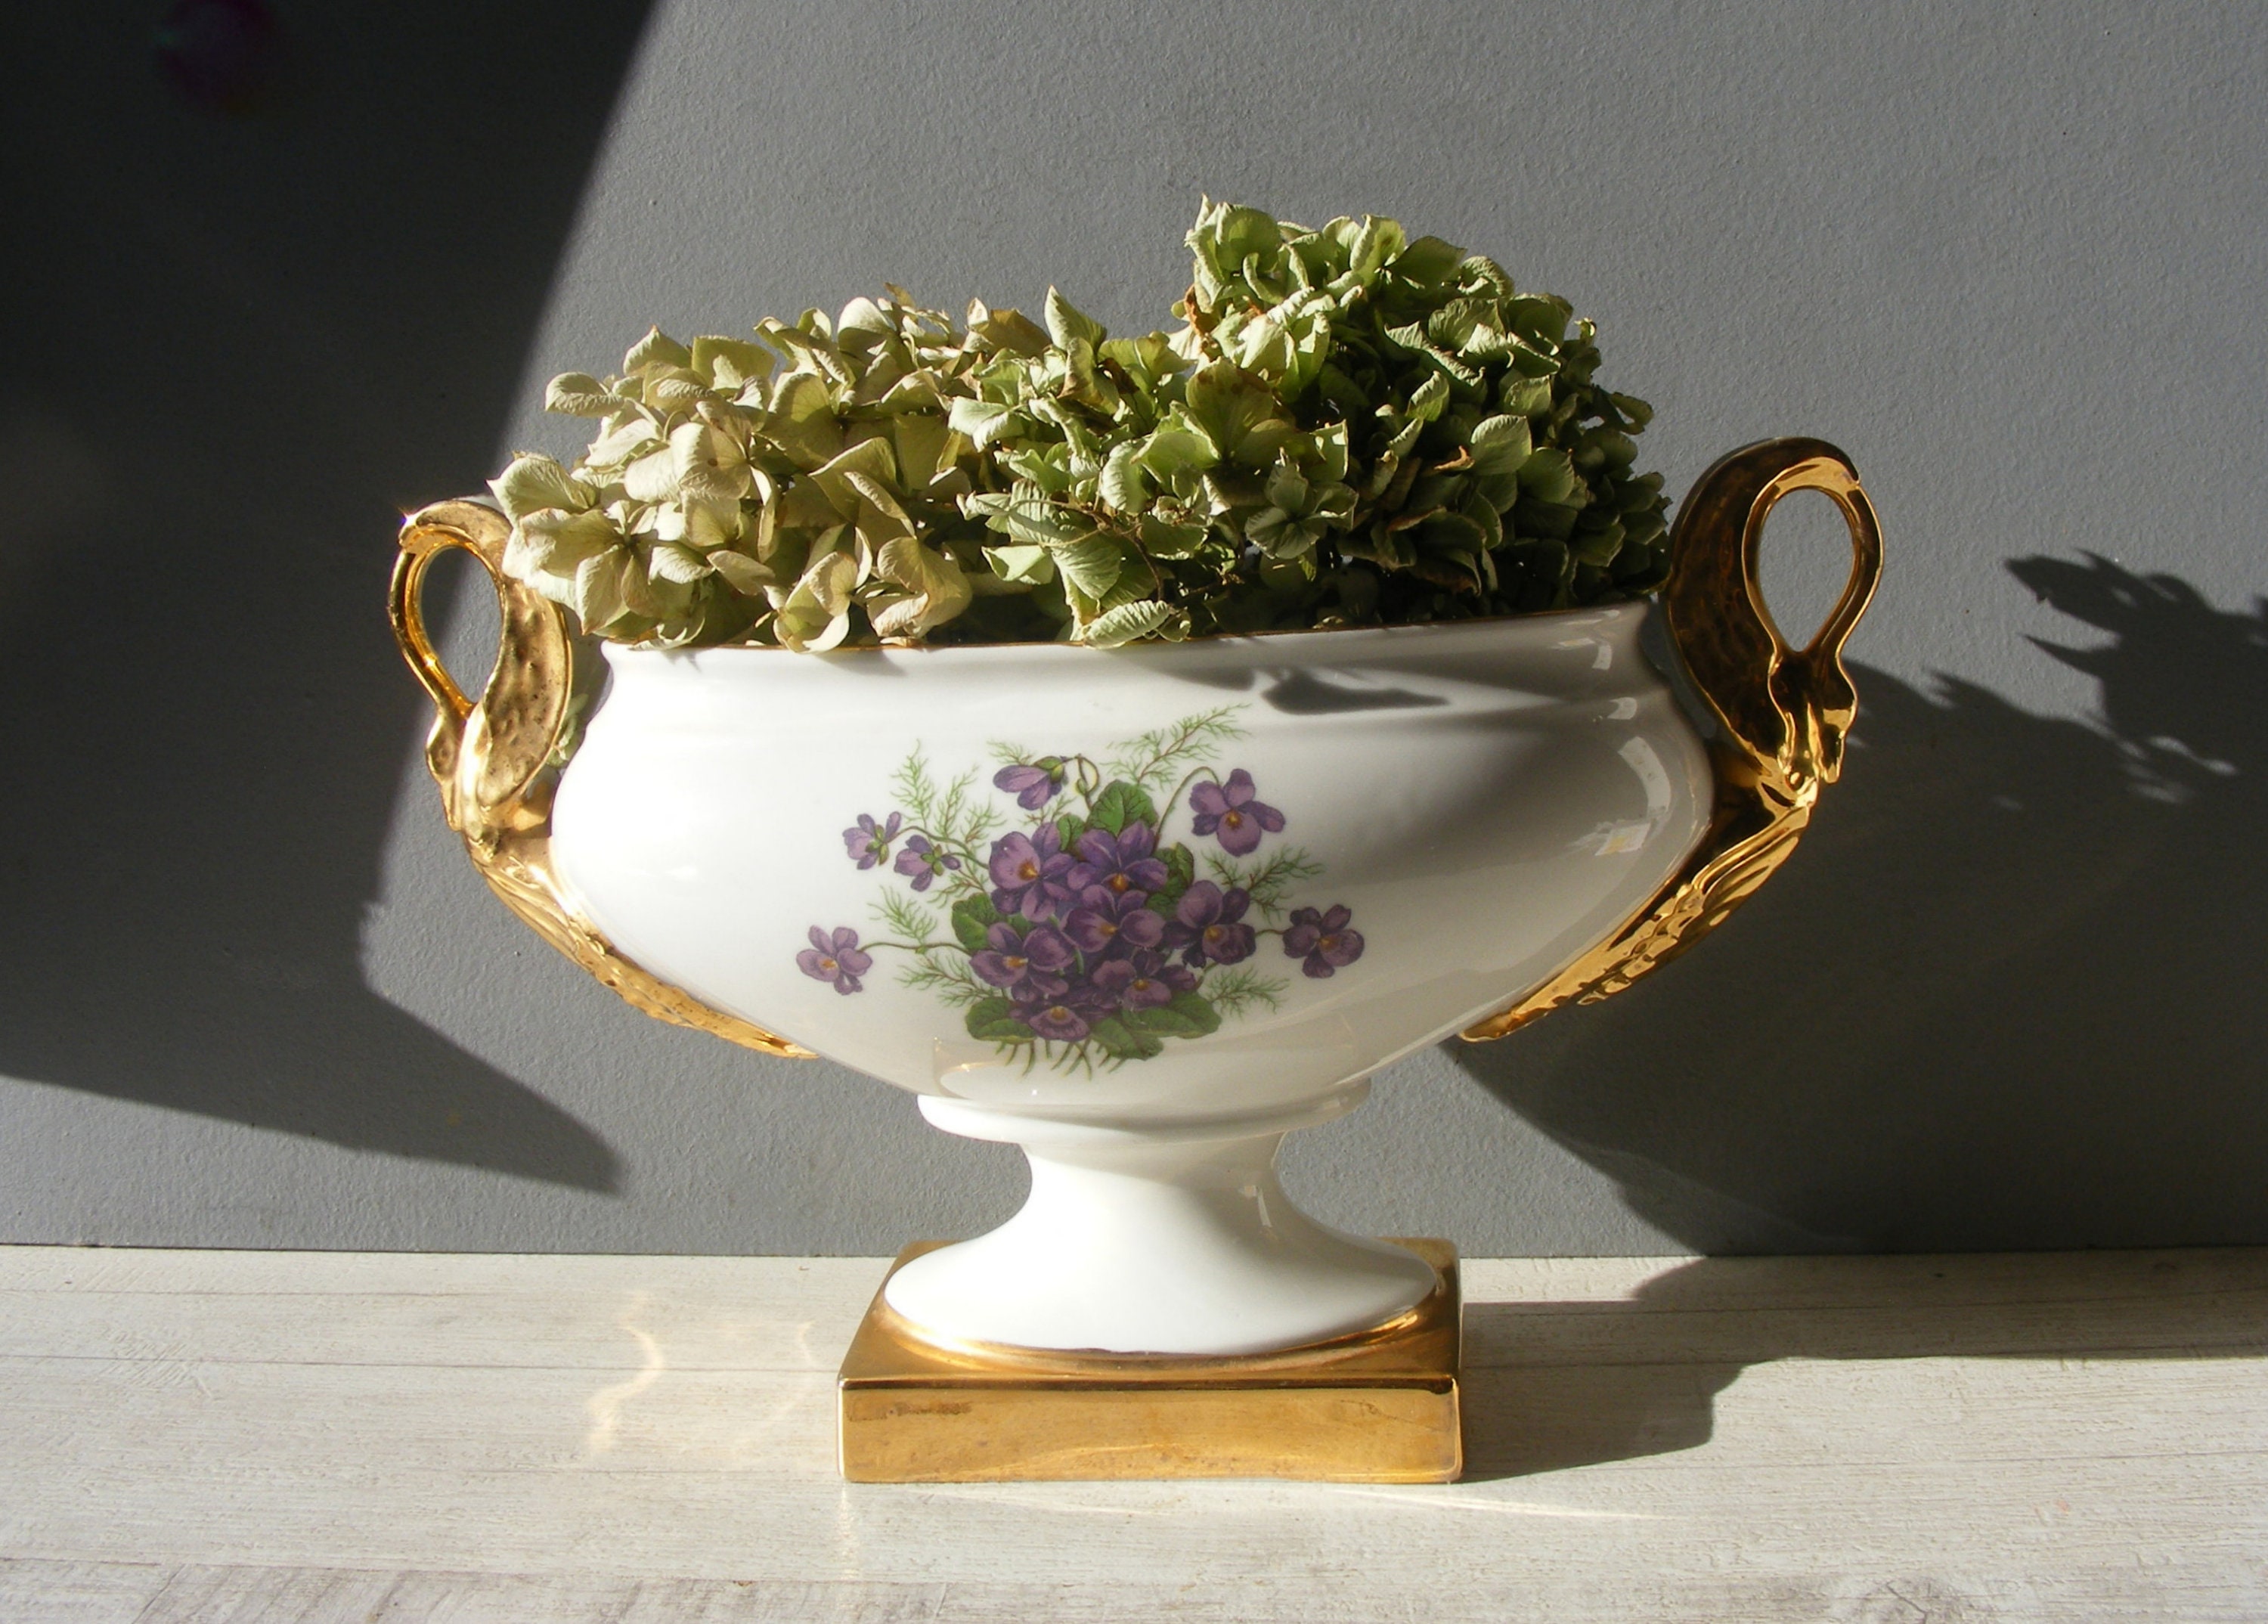 Délicat Millésime Français Porcelain Jardiniere/ Violets Decor,/Golden Swan Poignées.